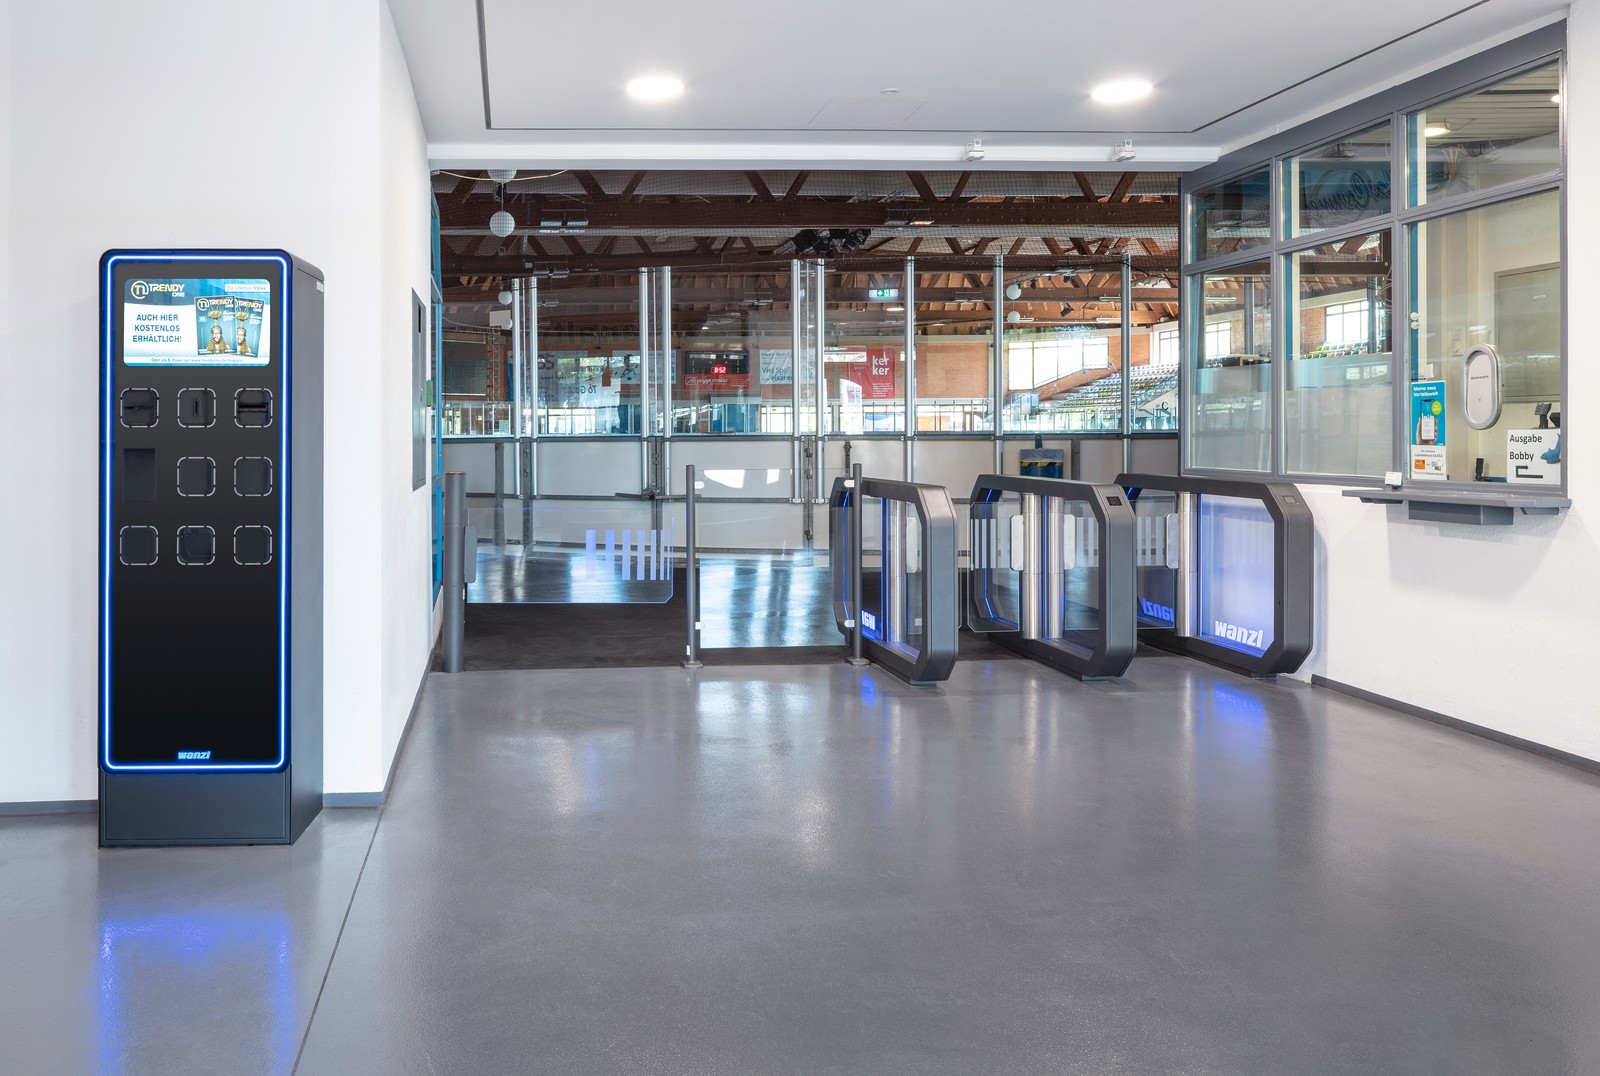 Das System aus Ticketautomat und Zutrittsschleuse optimiert den Eintritt in die Eishalle und managt souverän Besucherströme.